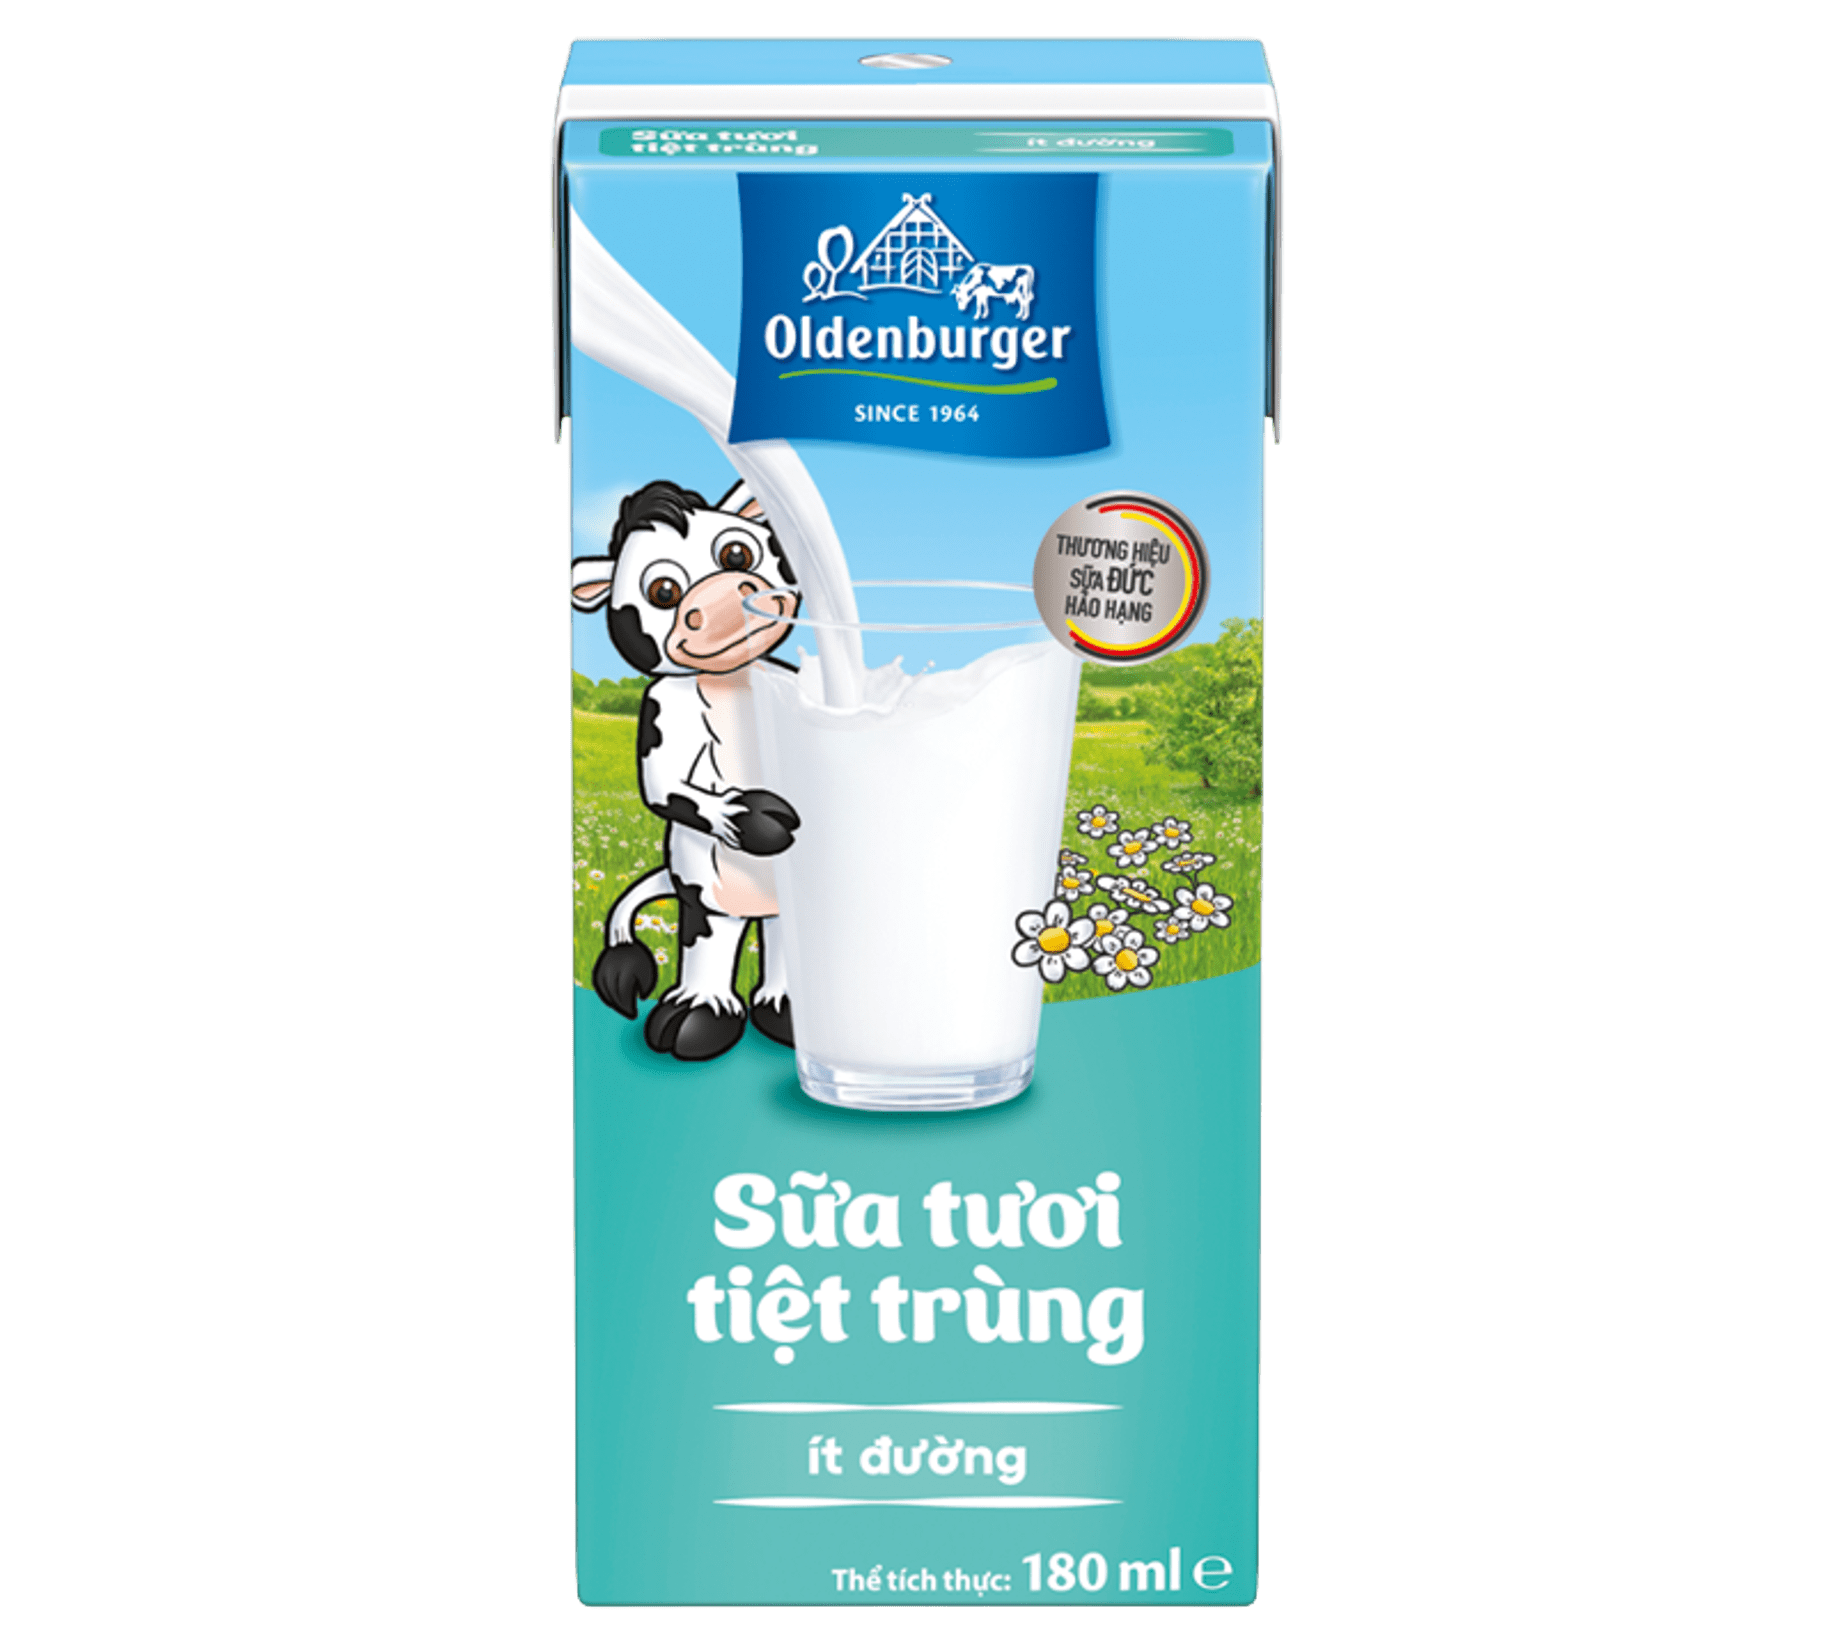 Sữa tươi tiệt trùng ít đường hiệu Oldenburger - Thùng 48 hộp x 180ml/hộp